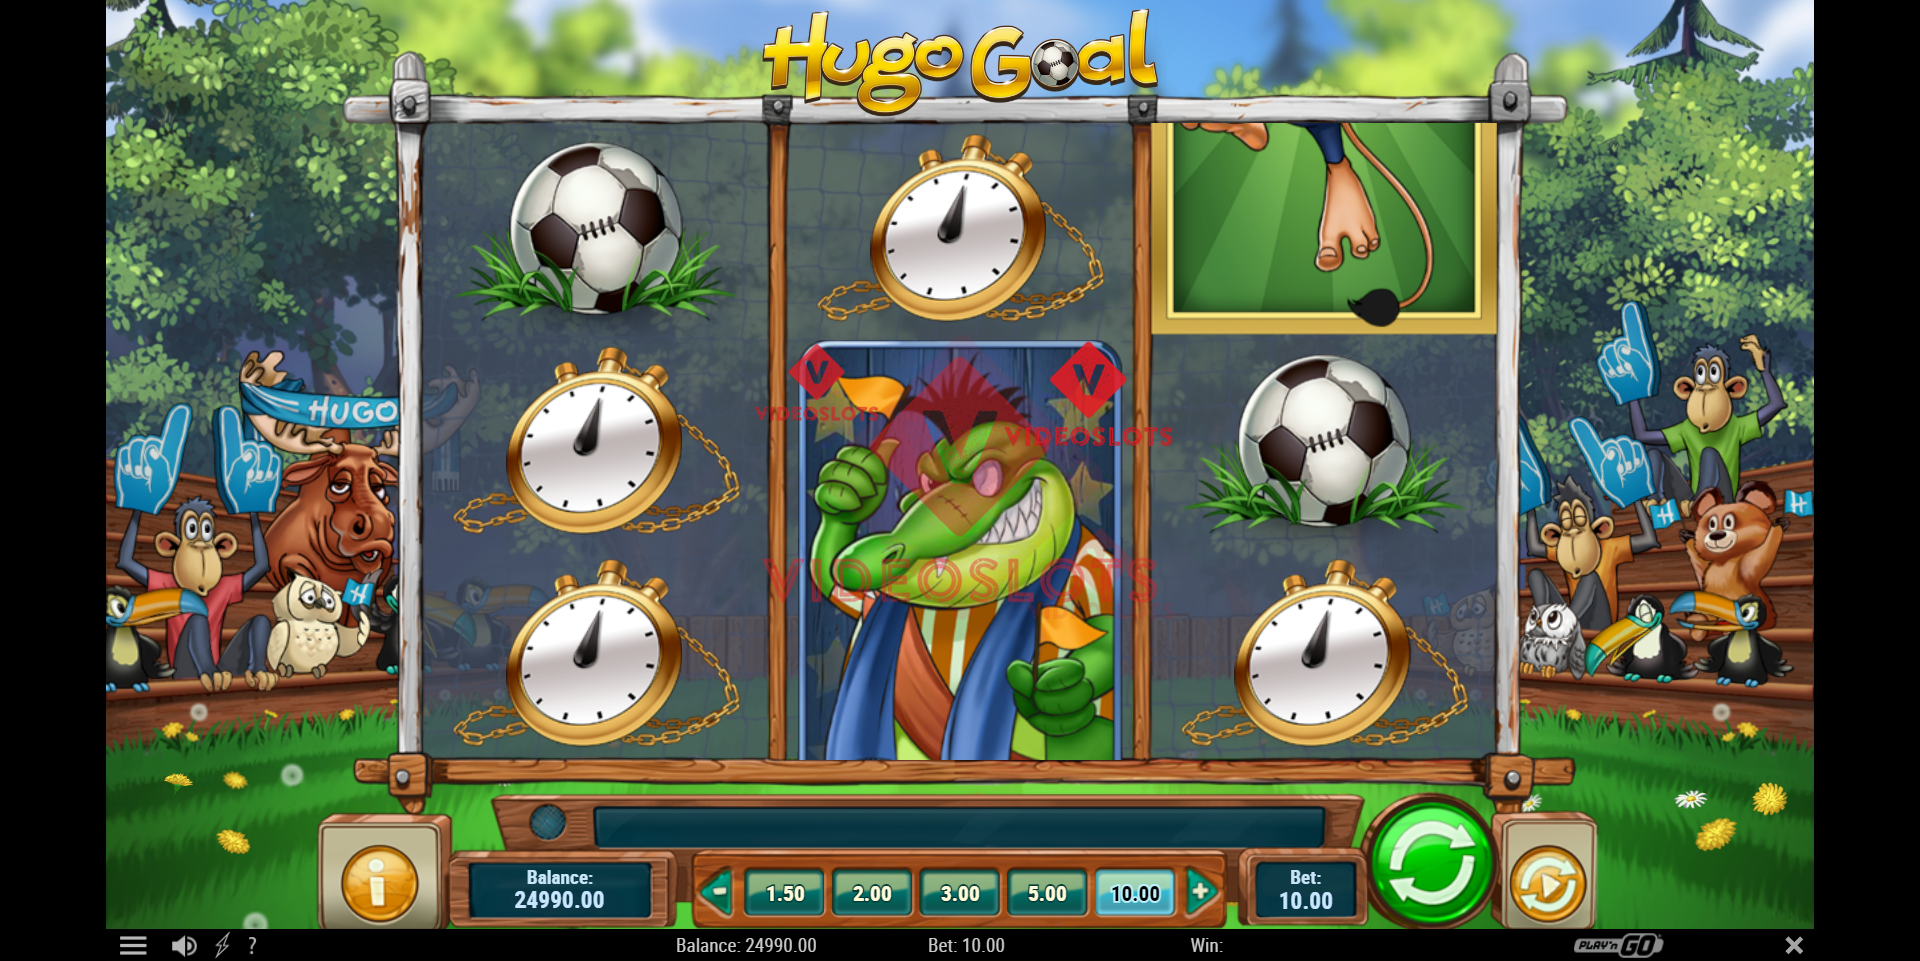 Base Game for Hugo Goal slot from Play'n Go